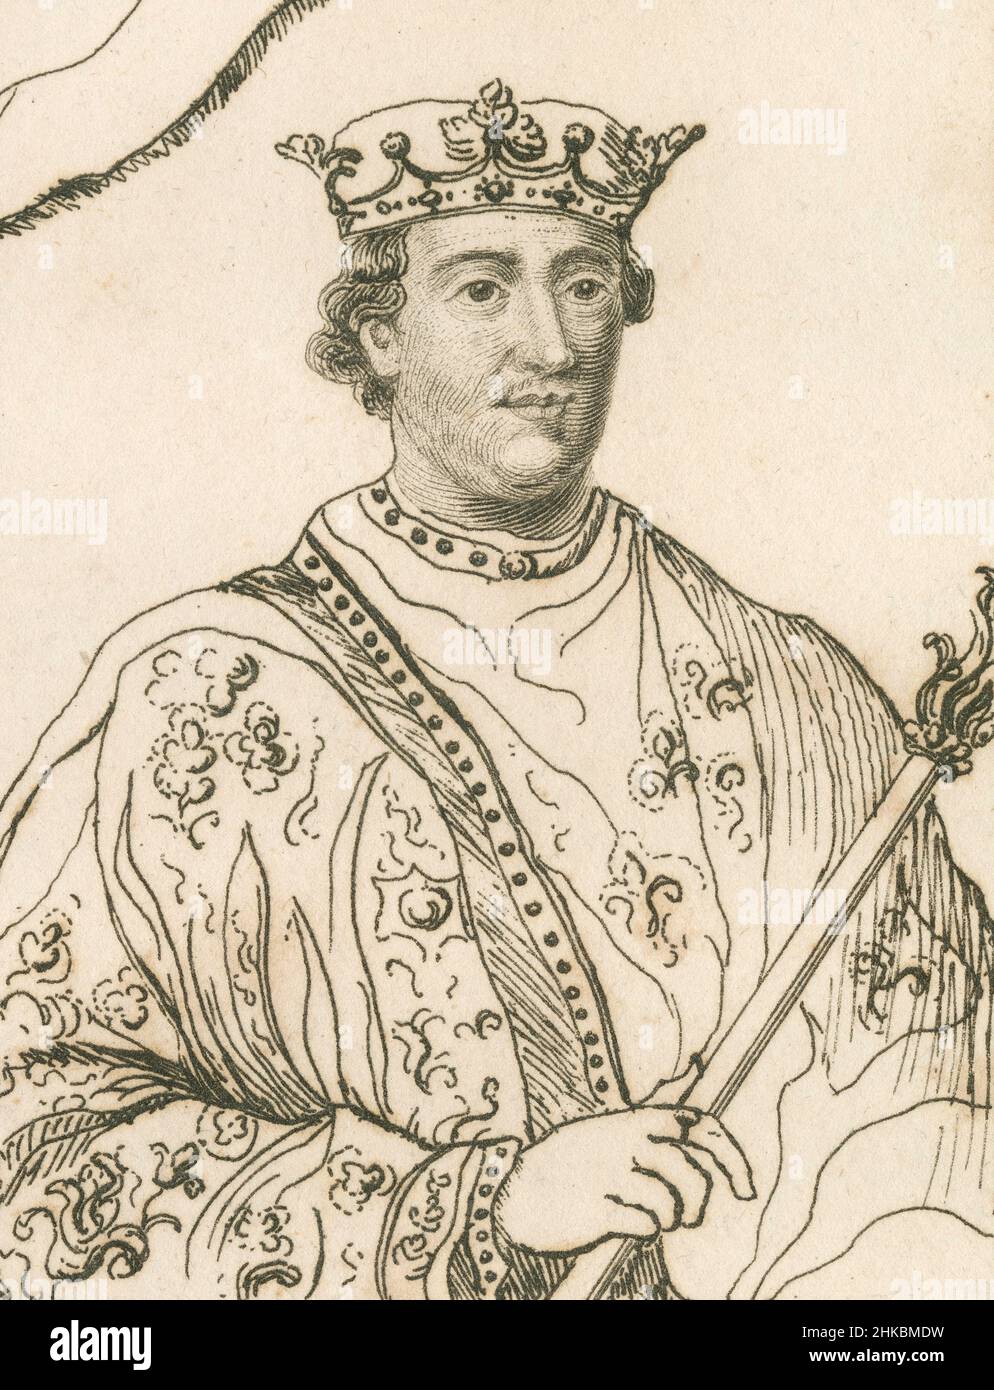 Antica incisione del 1812 di Enrico II d'Inghilterra. Enrico II (1133-1189) fu re d'Inghilterra dal 1154 fino alla sua morte nel 1189. FONTE: INCISIONE ORIGINALE Foto Stock